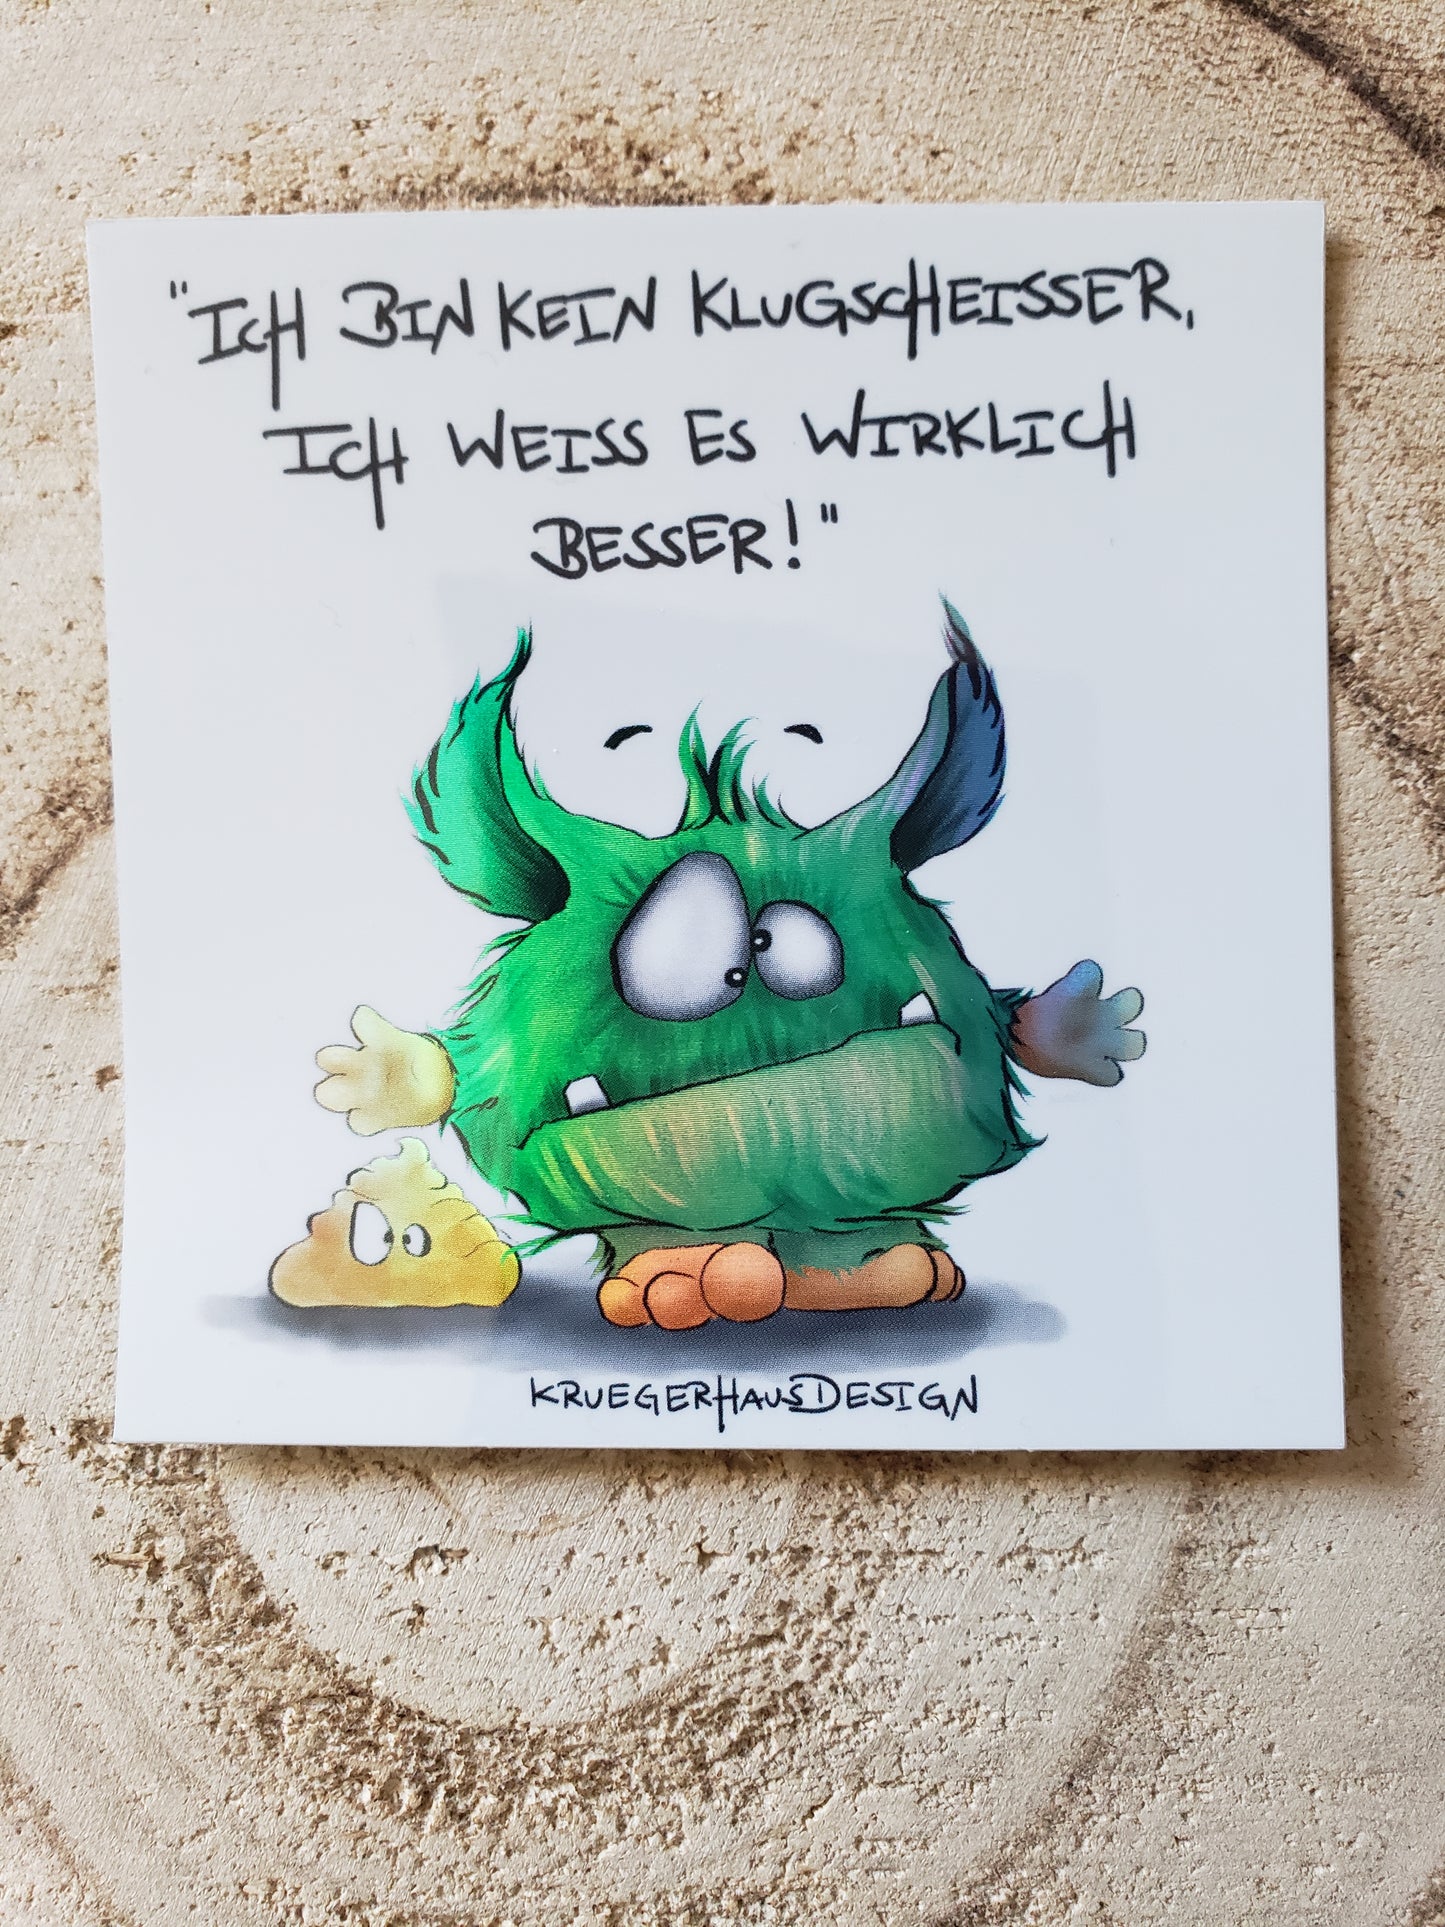 Sticker Hologram Kruegerhausdesign mit Monster und Spruch "Ich bin kein Klugscheisser.."